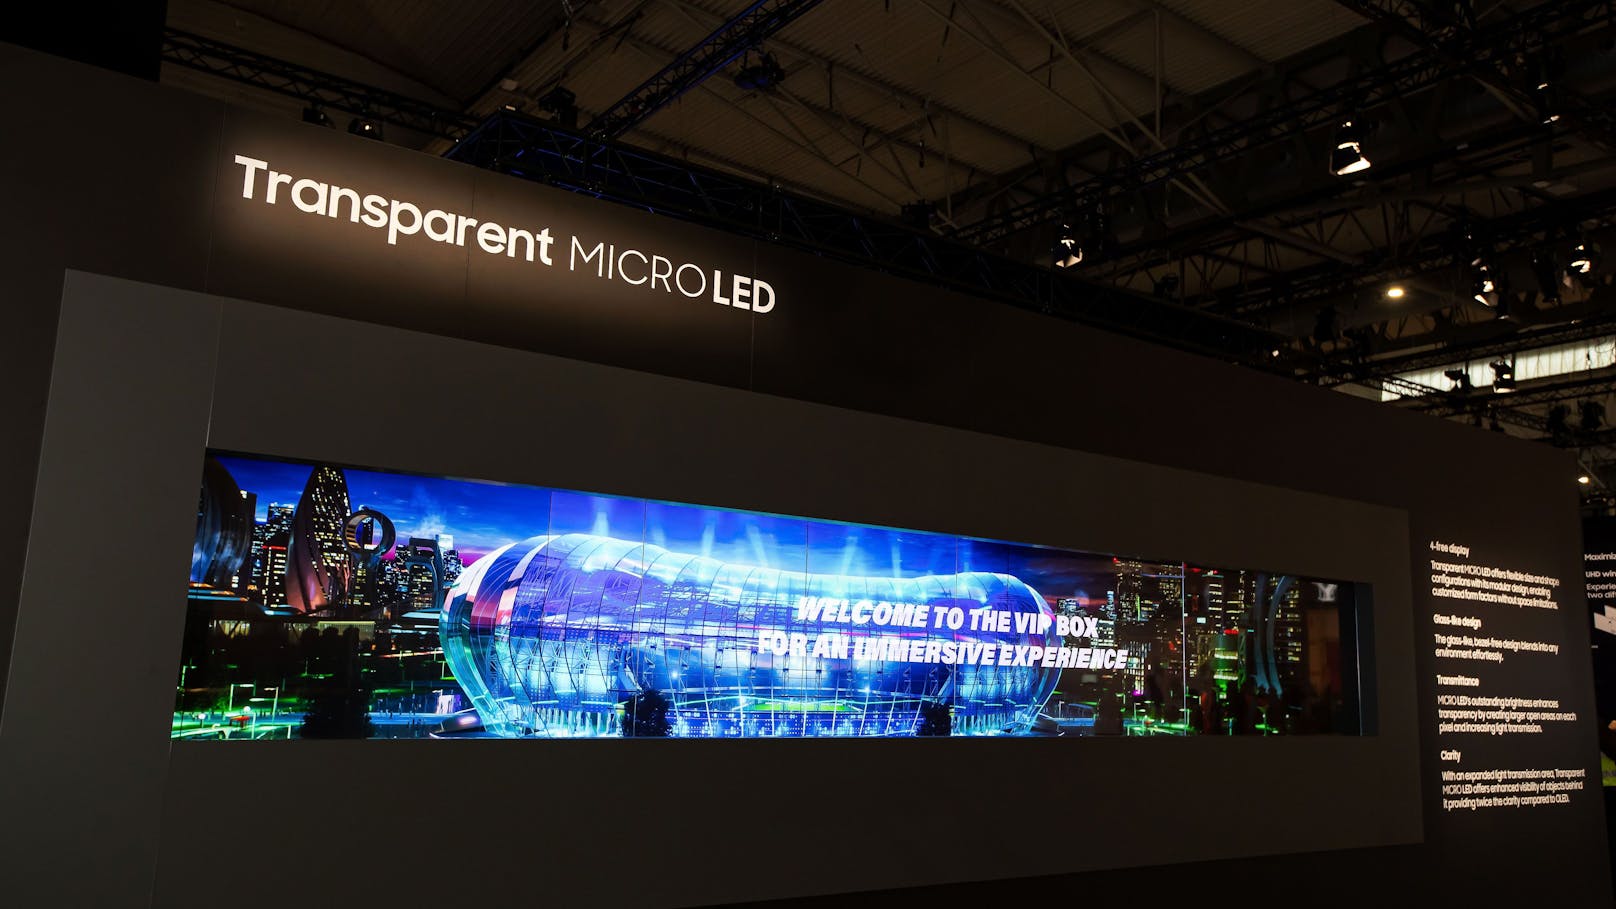 Samsung stellt "transparente Mikro-LED" in Europa vor